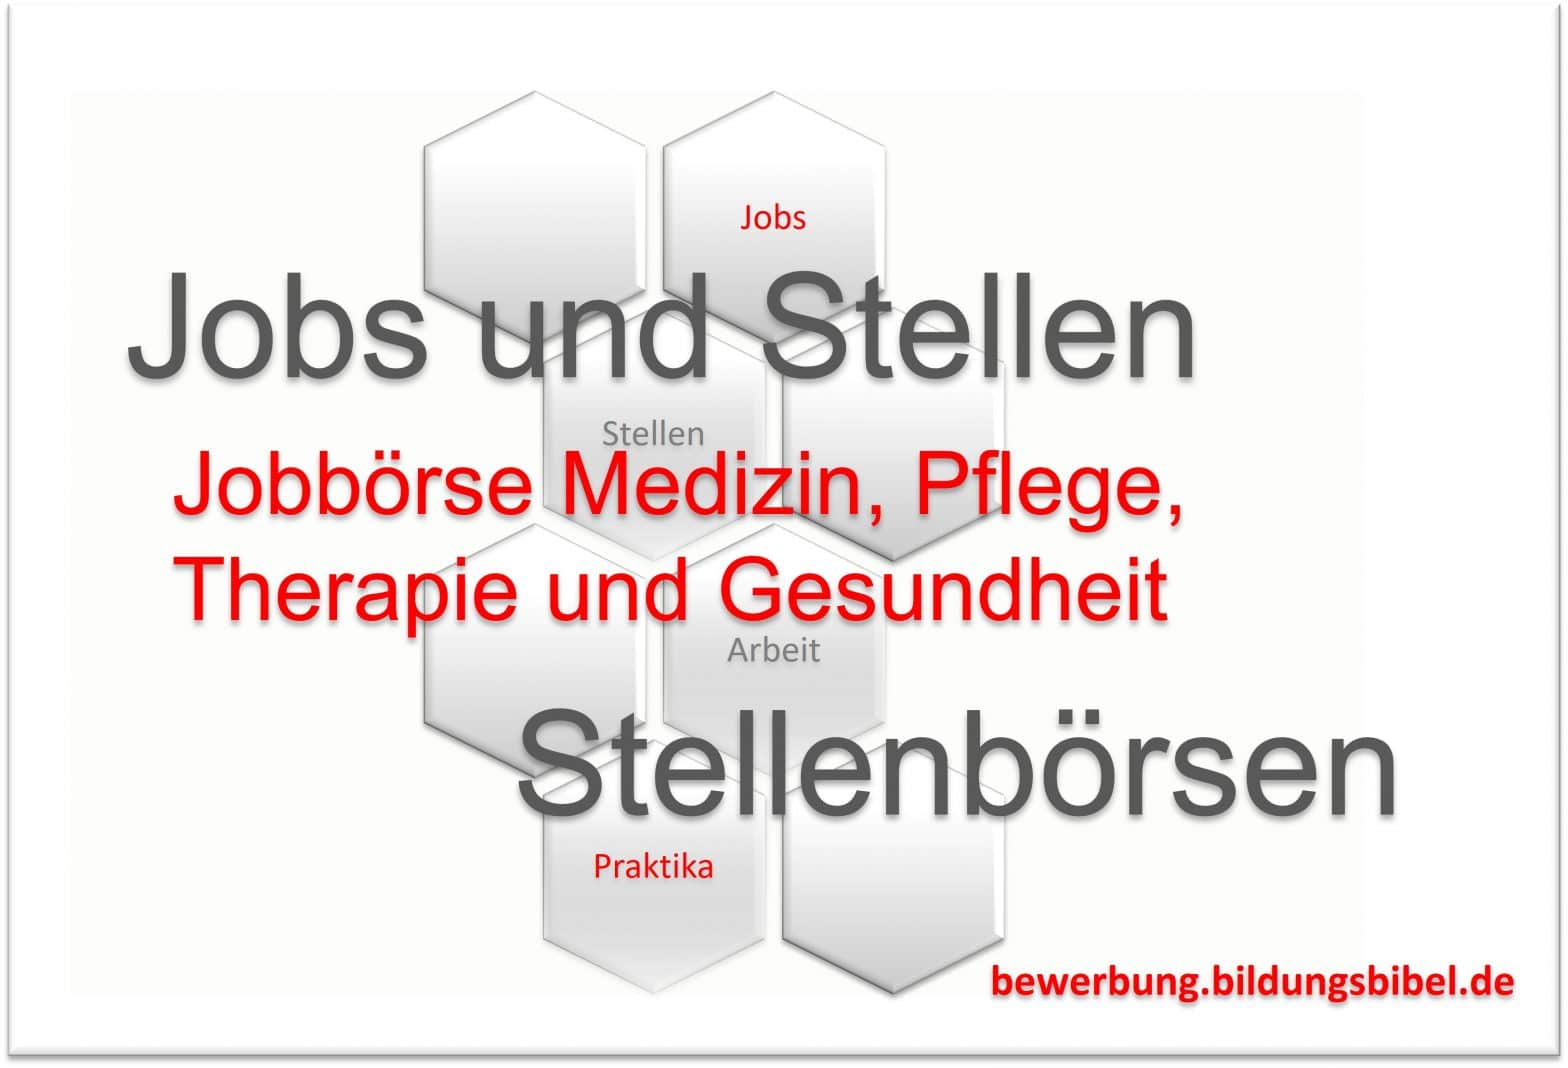 Jobbörse für Medizin, Pflege, Therapie und Gesundheit, Jobs bzw. Stellenangebot suchen und finden, Jobs für Pfleger, Arzt und Therapeut.